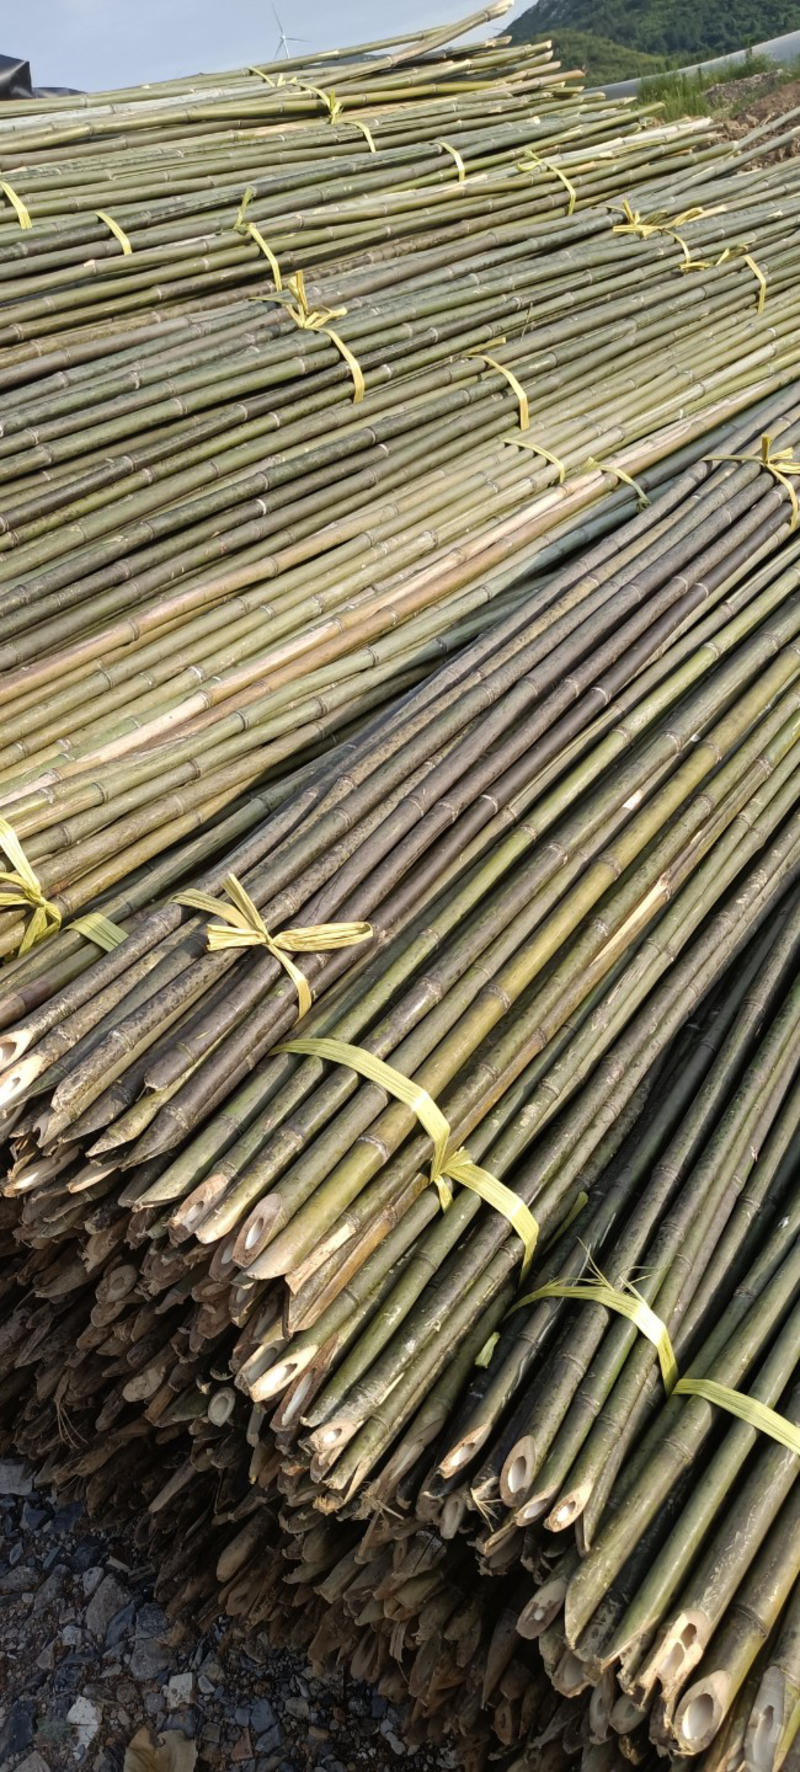 竹竿2.8米至3米瓜果专用可实地考察